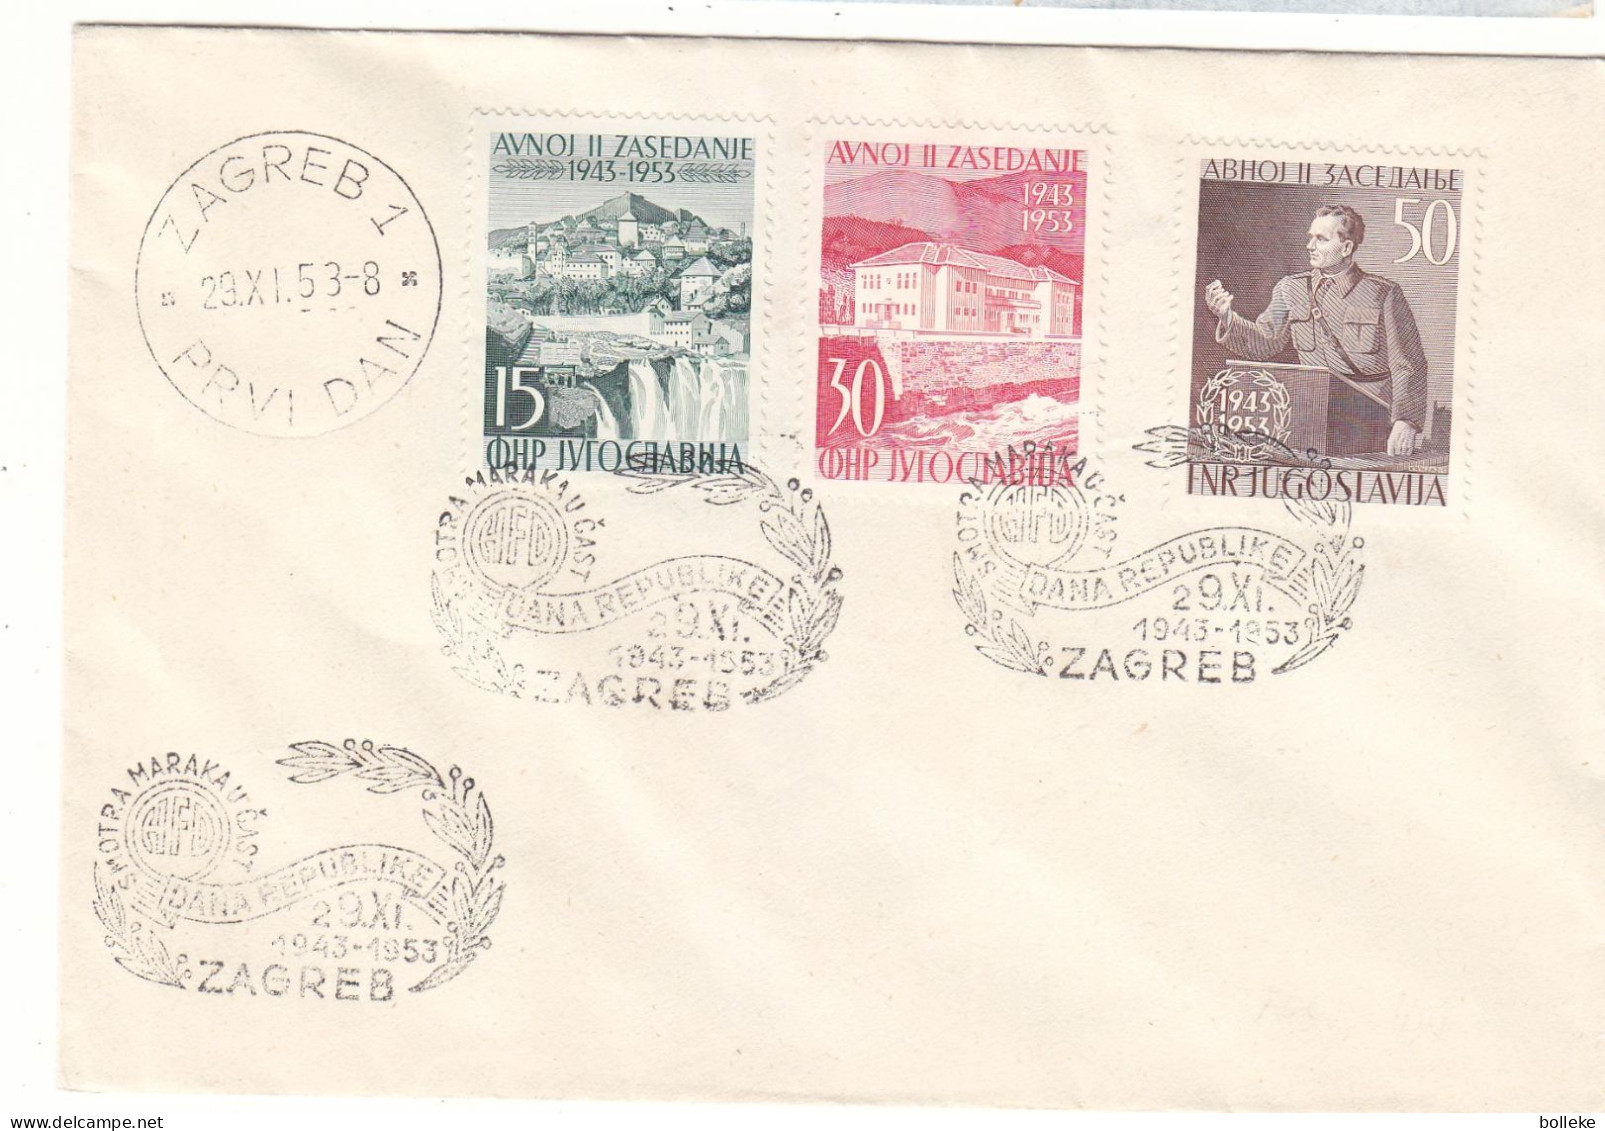 Yougoslavie - Lettre De 1953 - Oblit Zagreb - Tito - Chutes D'eaux - Valeur 60,00 Euros - Brieven En Documenten